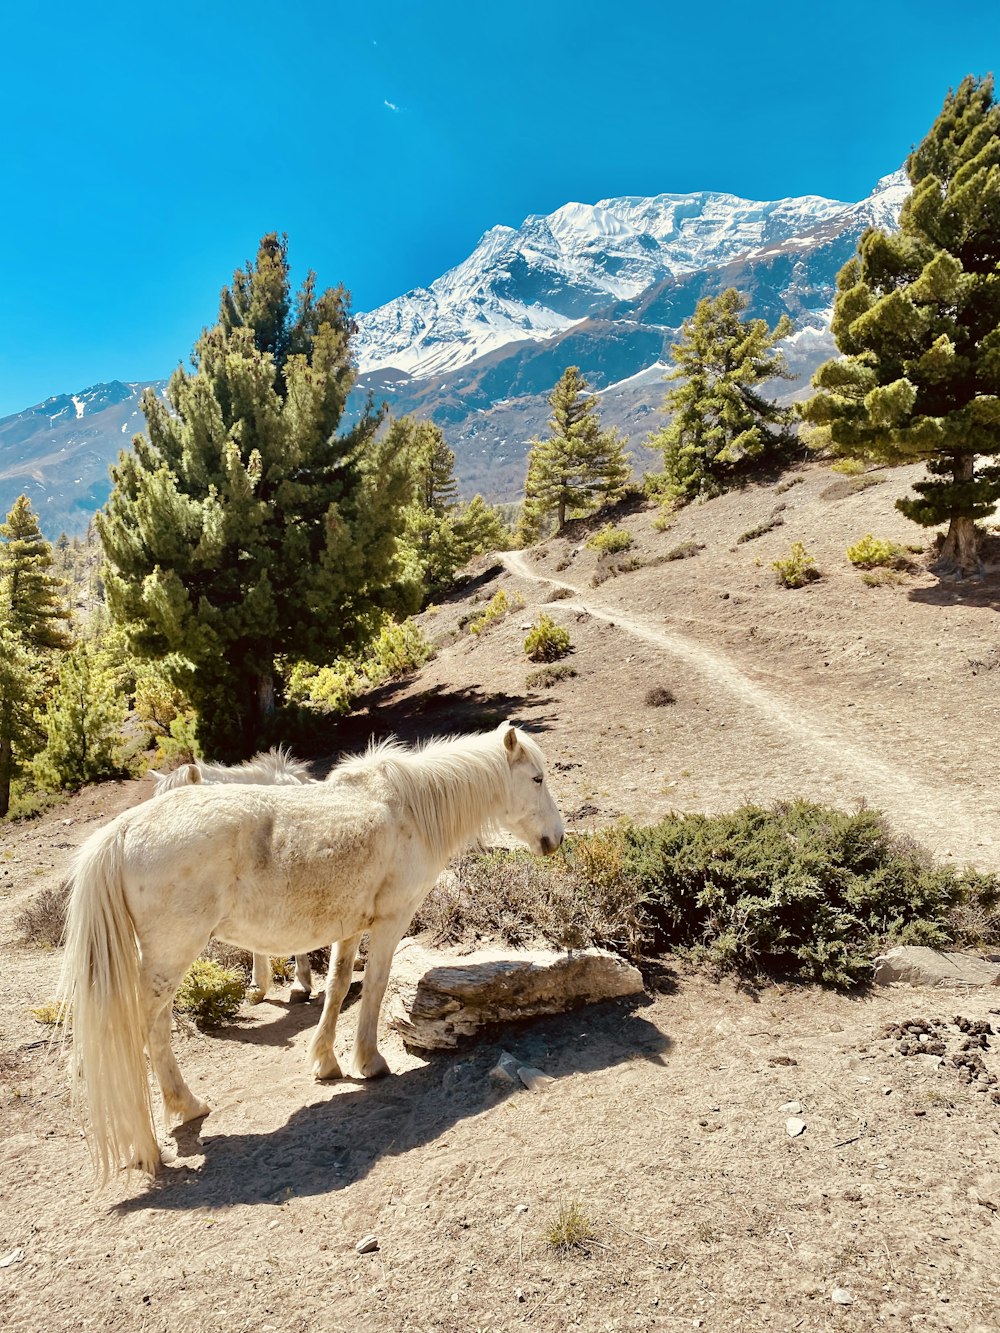 Un cavallo bianco in piedi su una collina rocciosa con alberi e montagne sullo sfondo